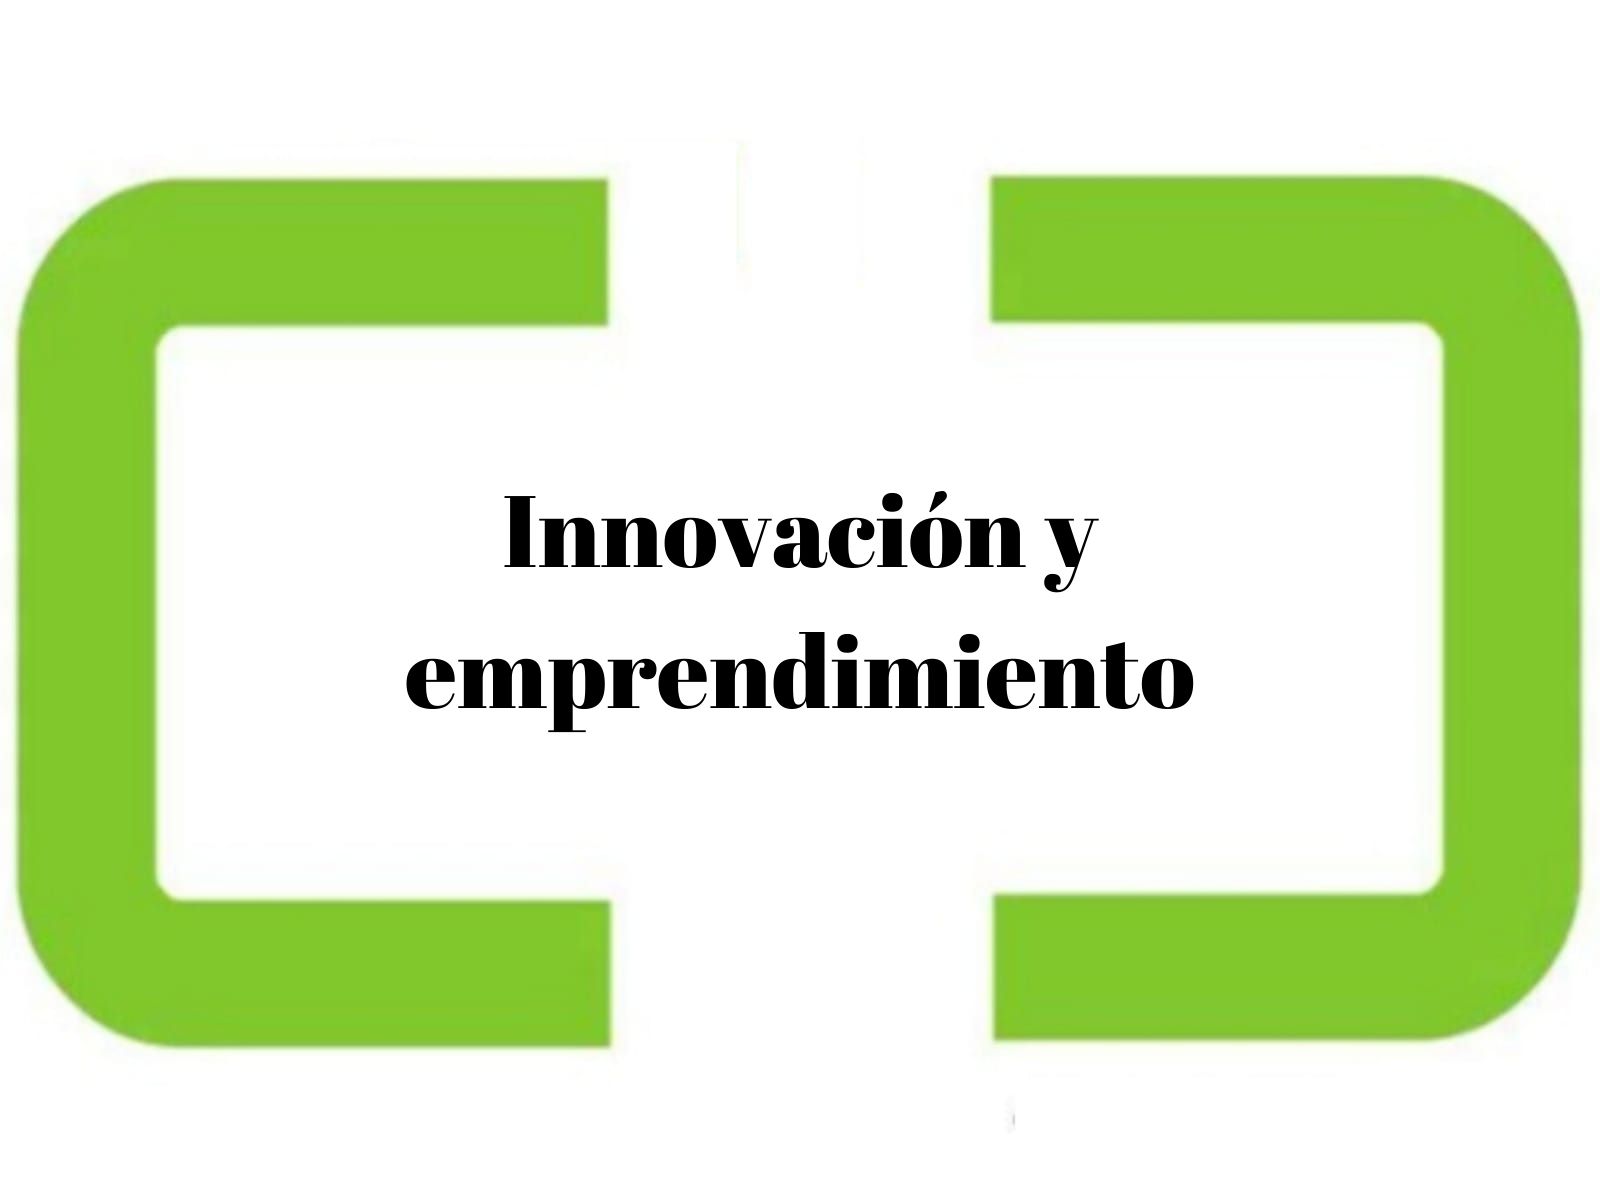 Innovacion y emprendimiento